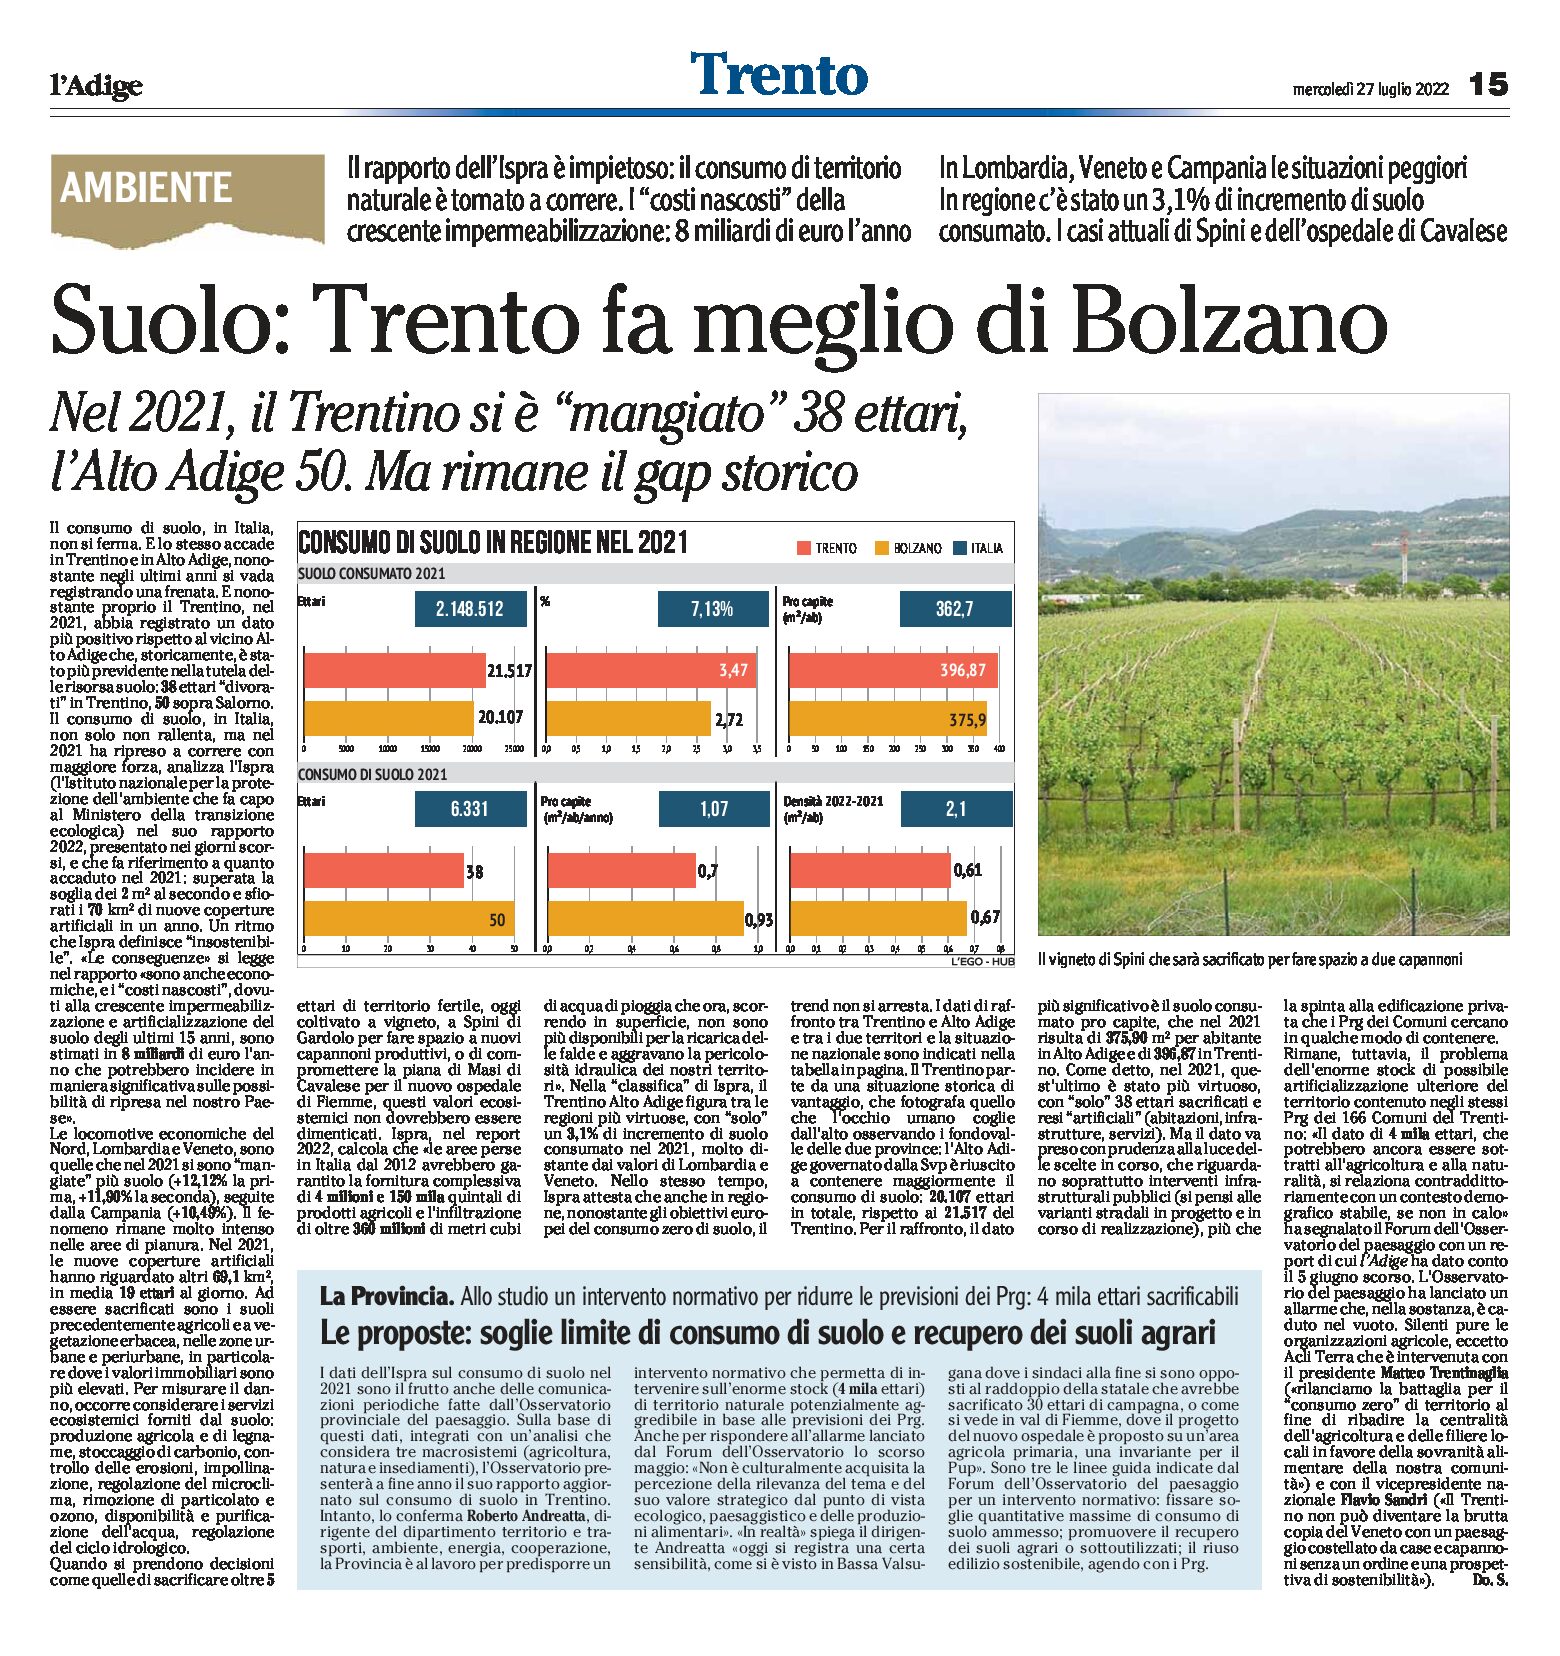 Trentino, consumo di suolo: Trento fa meglio di Bolzano